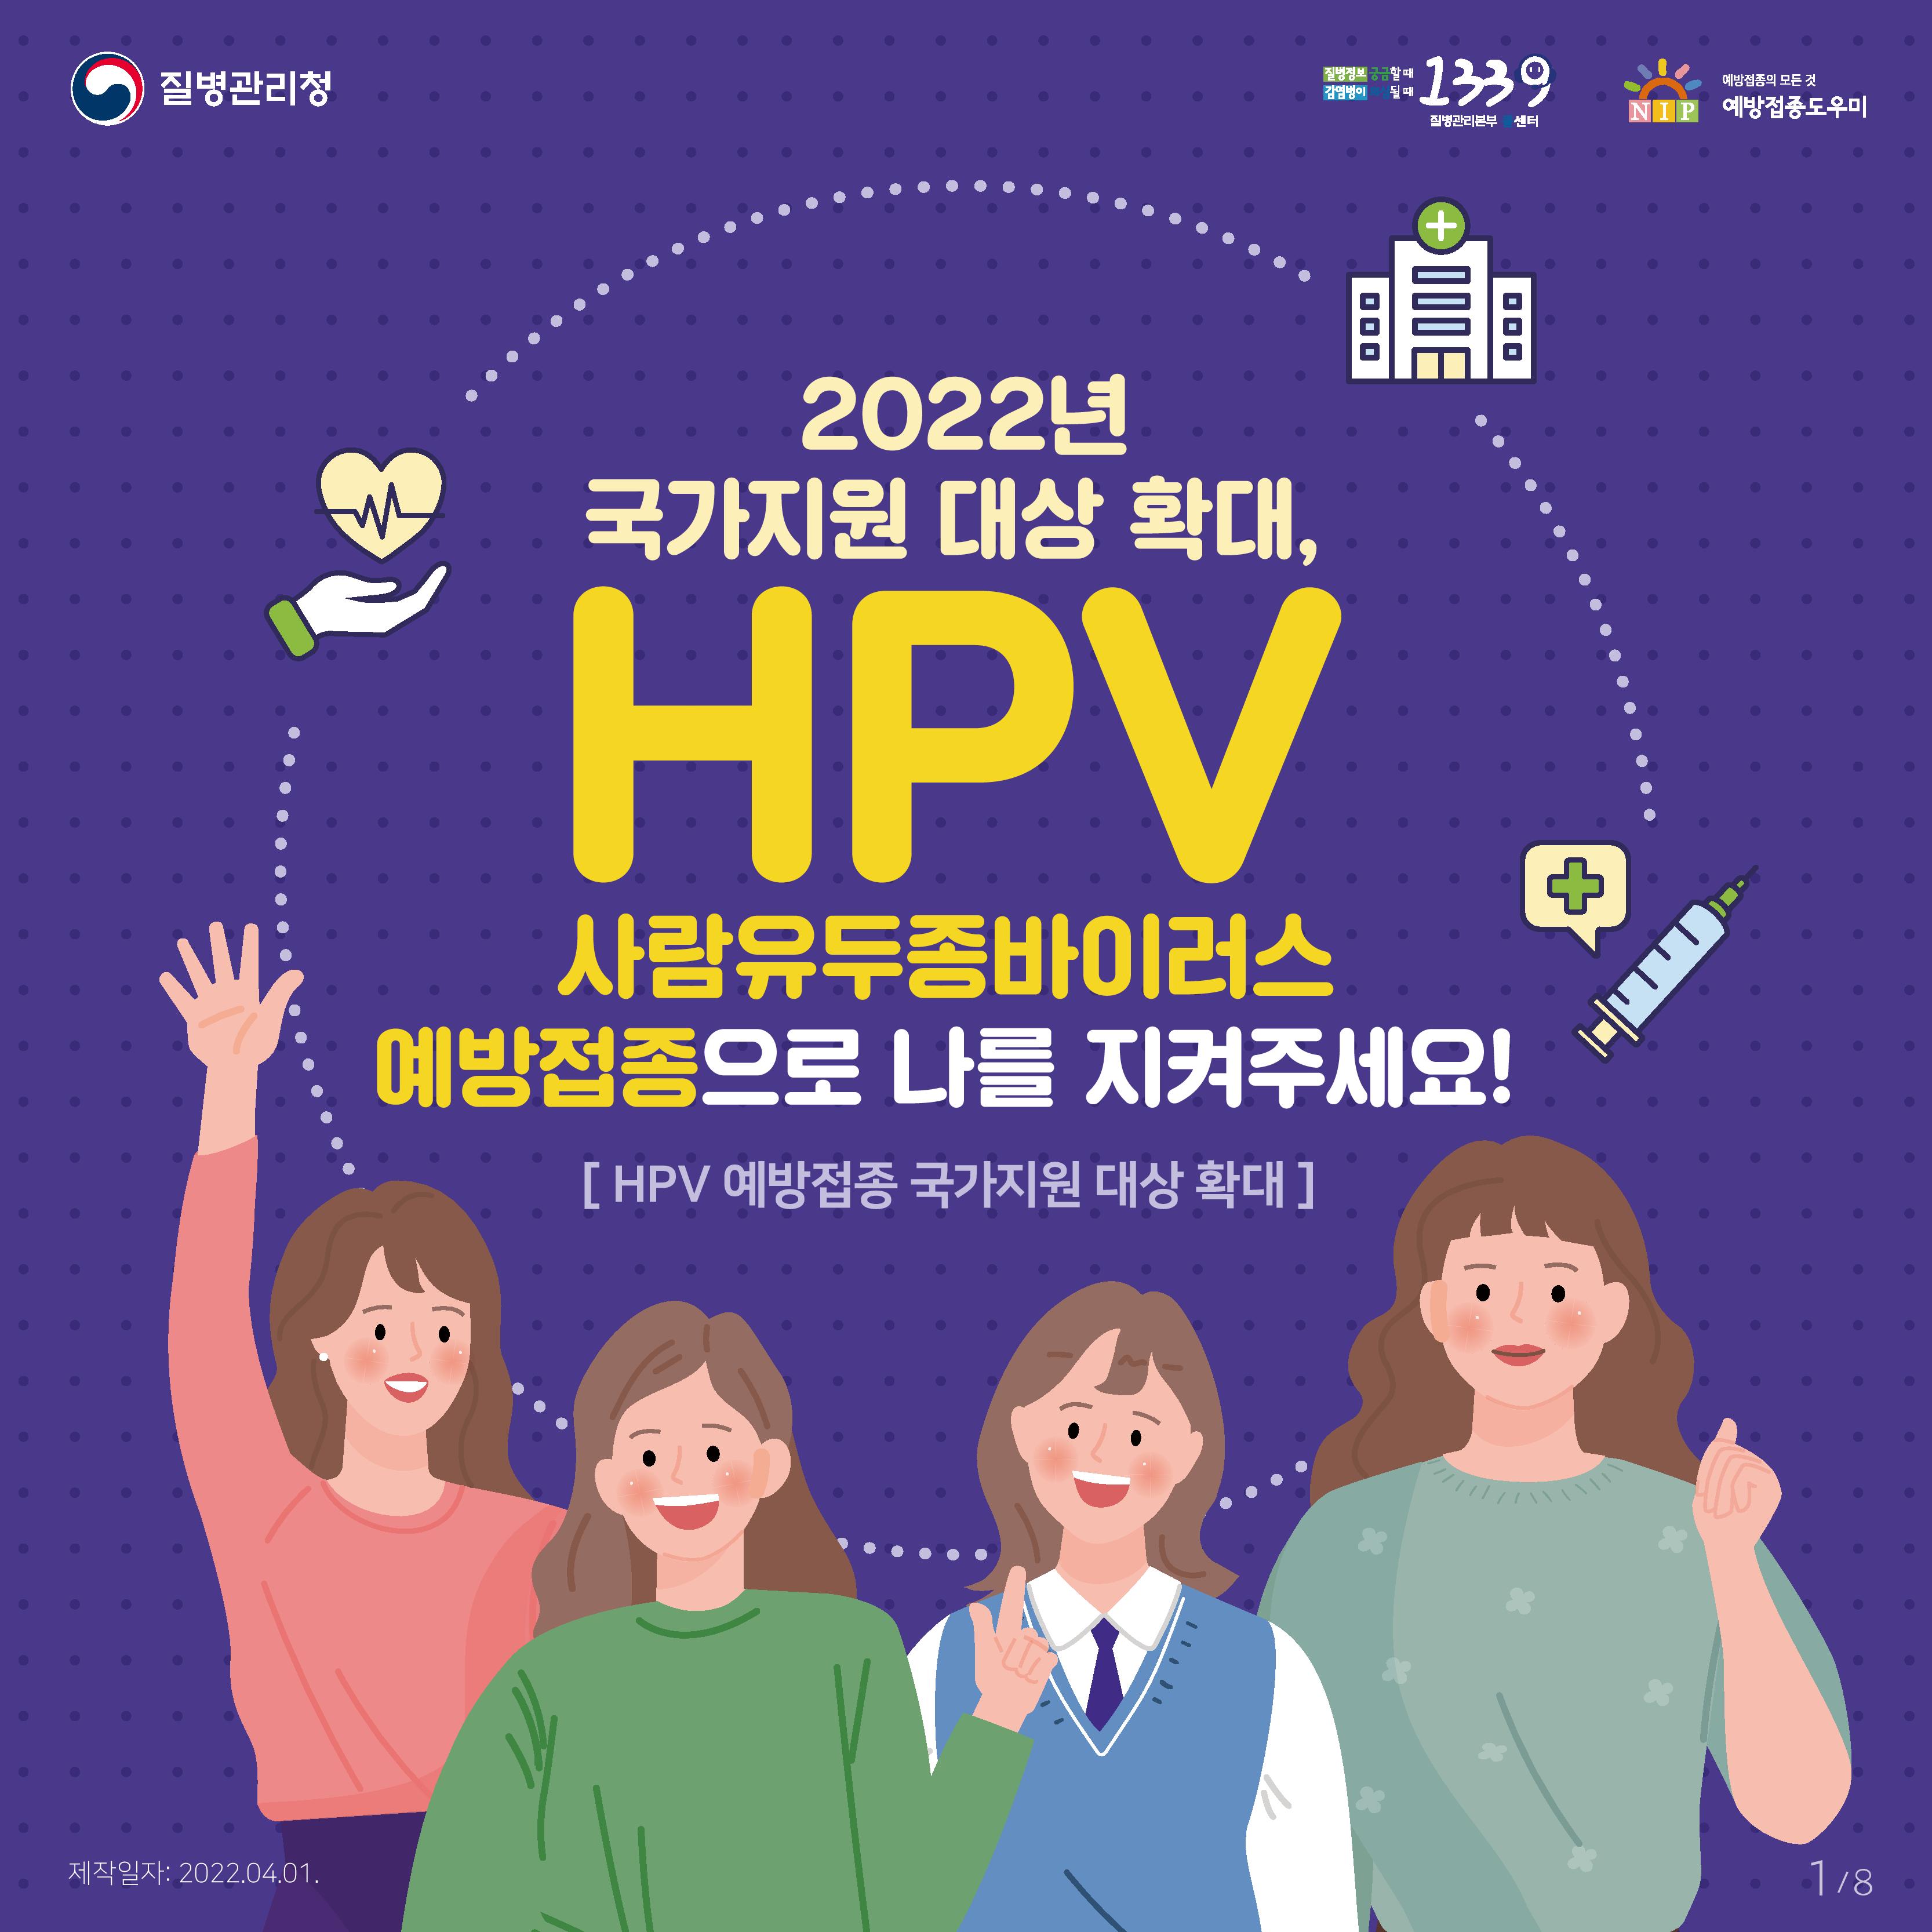 HPV 국가예방접종 지원사업_2022년 국가지원 대상 확대